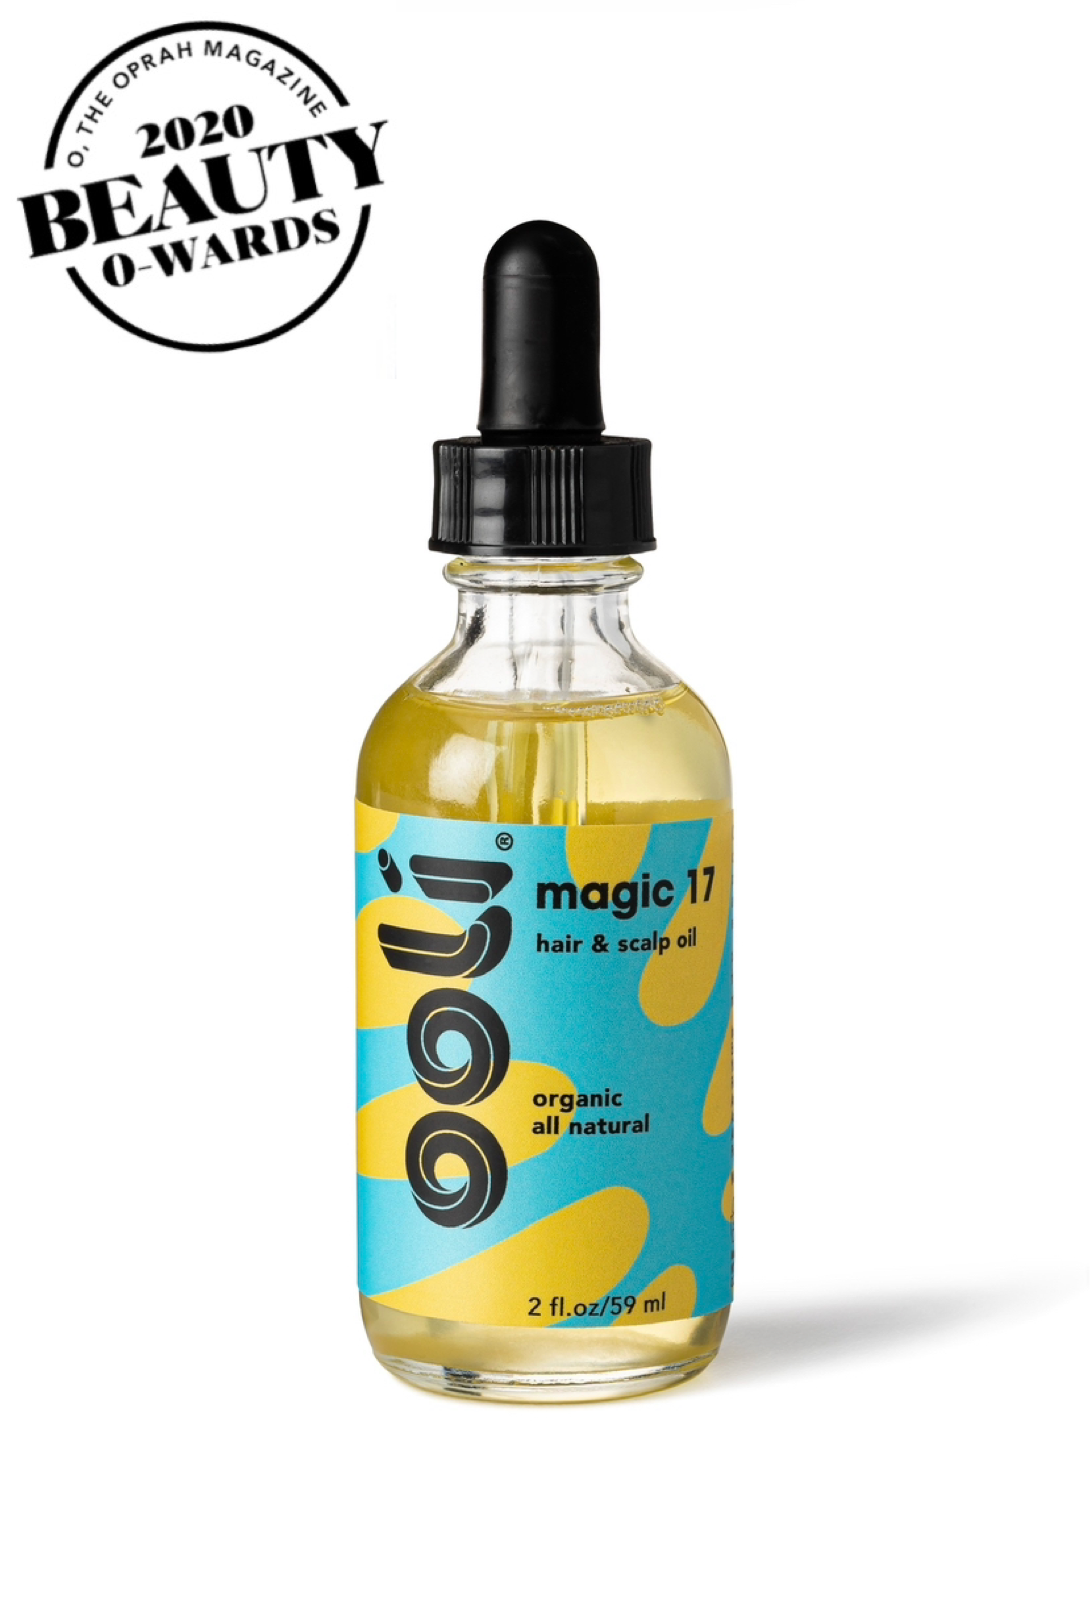 MAGIC 17™ Hair & Scalp Oil